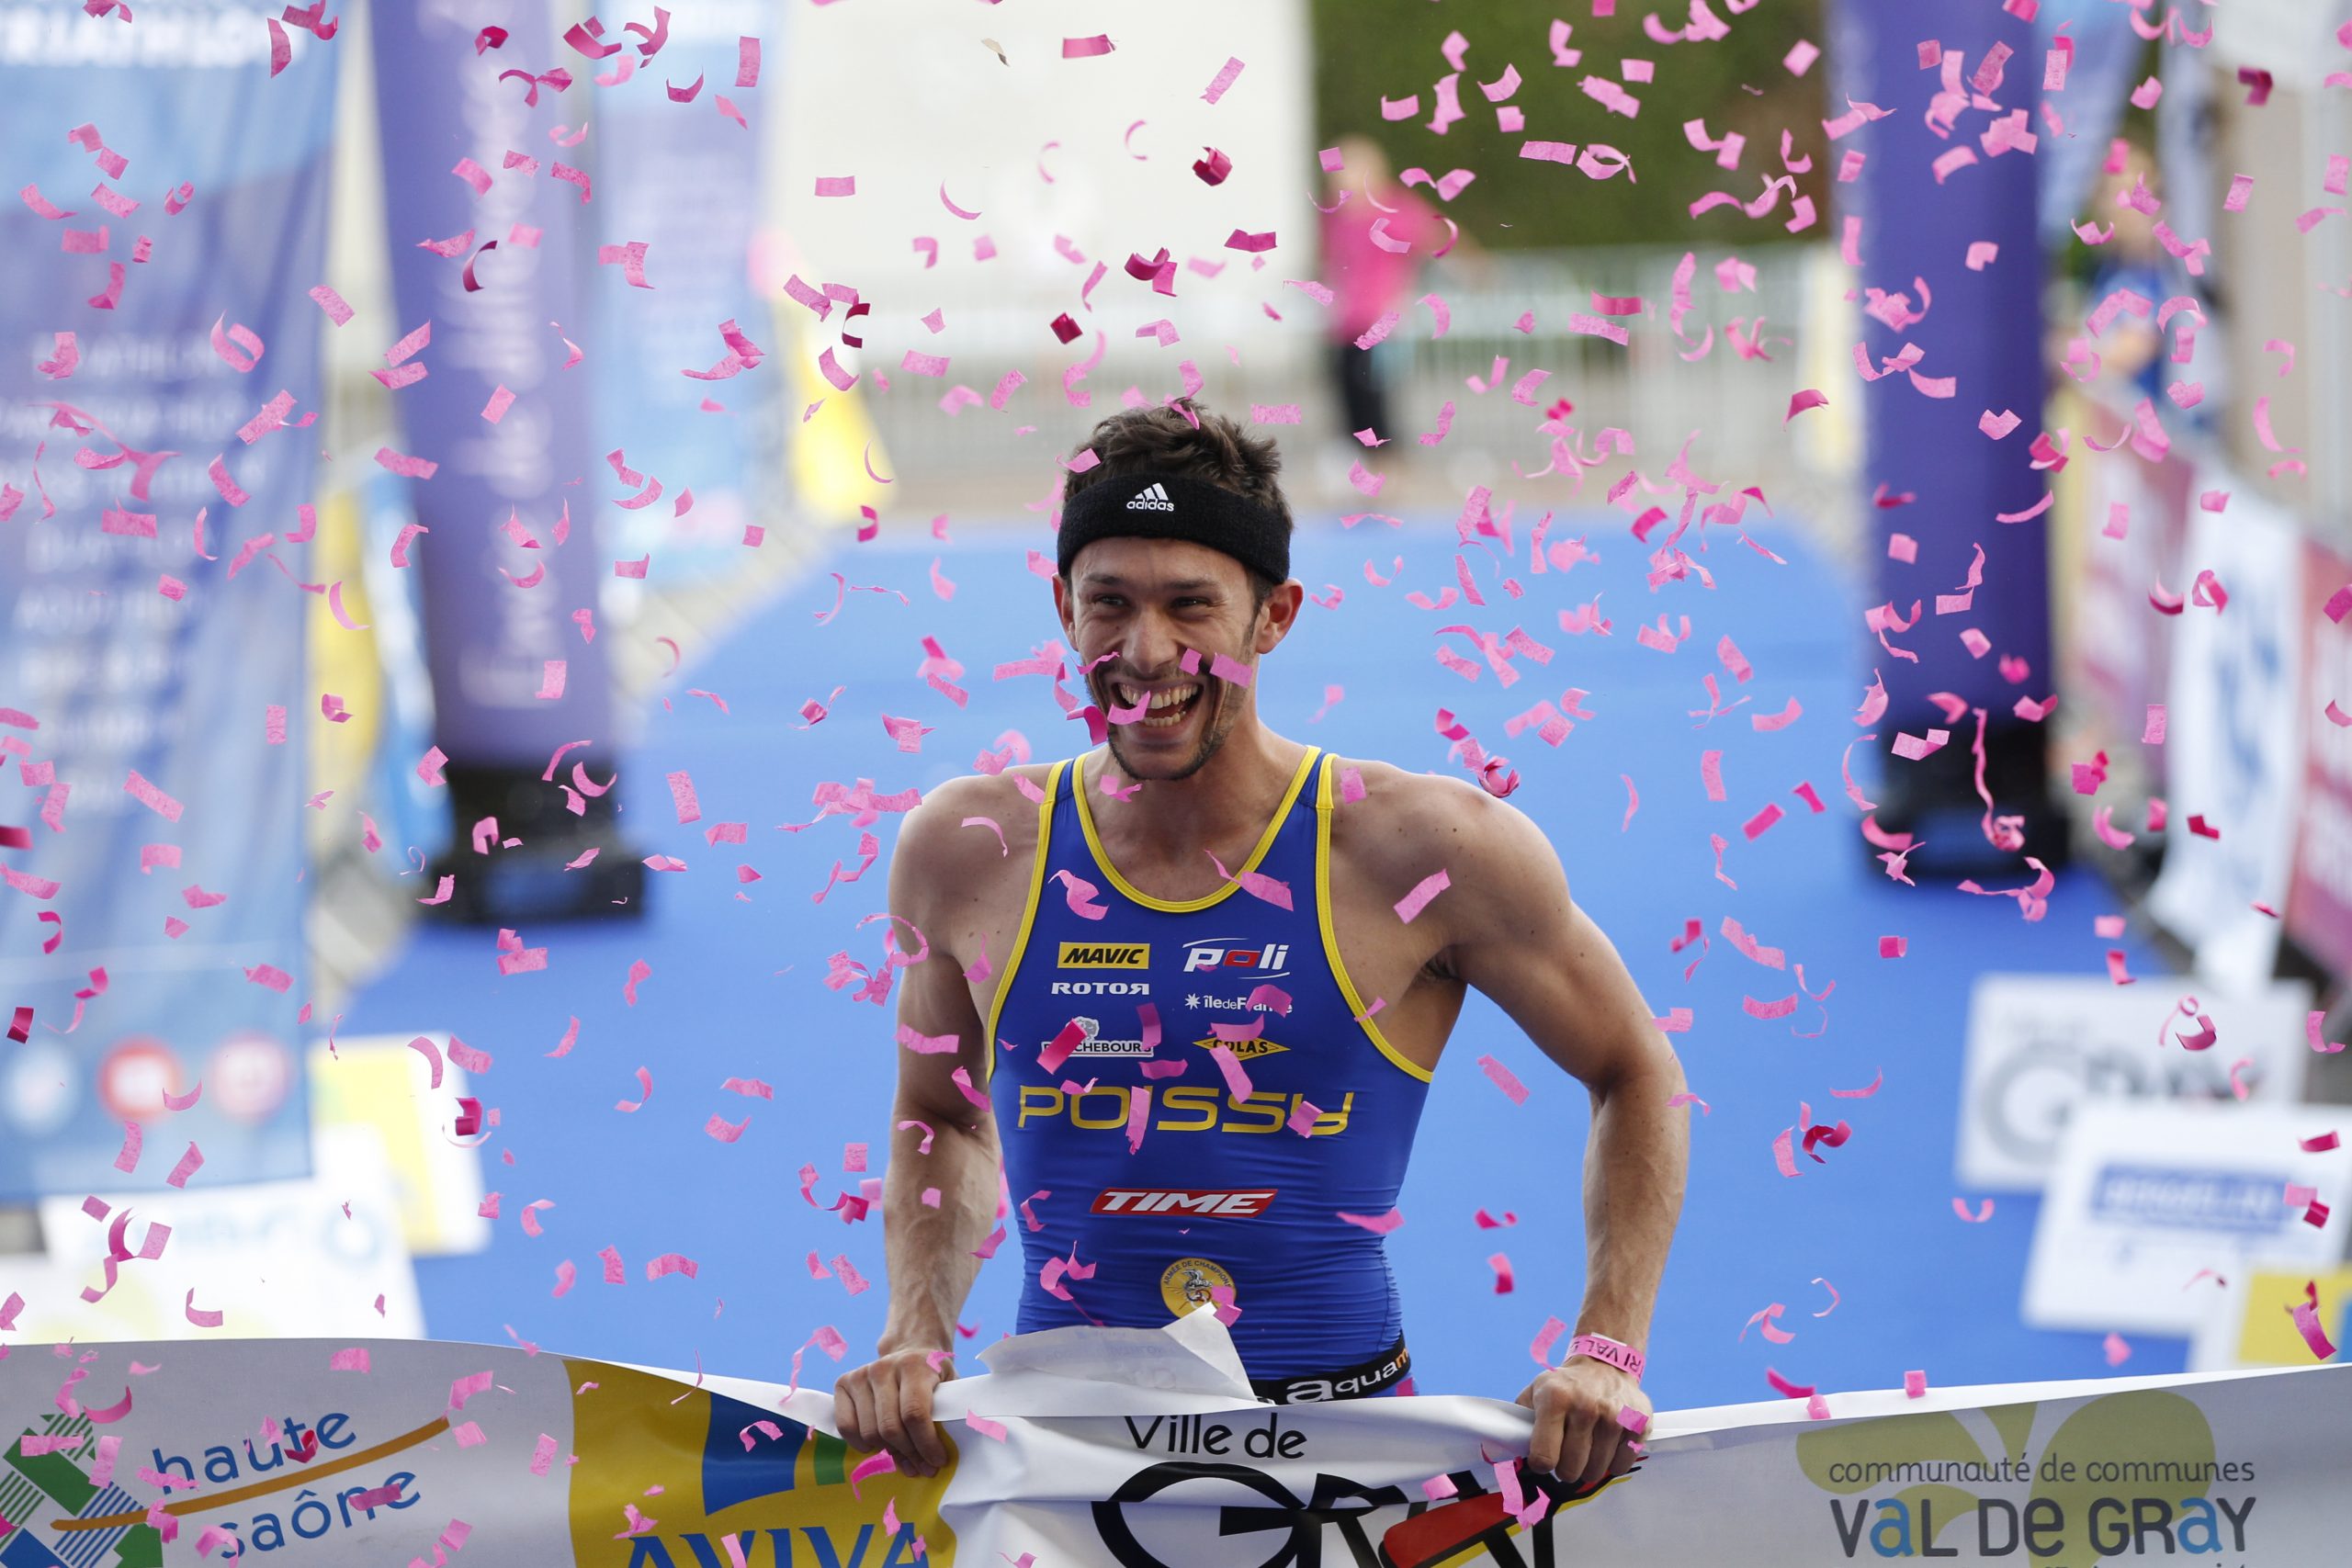 Poissy Triathlon marque le Championnat de France